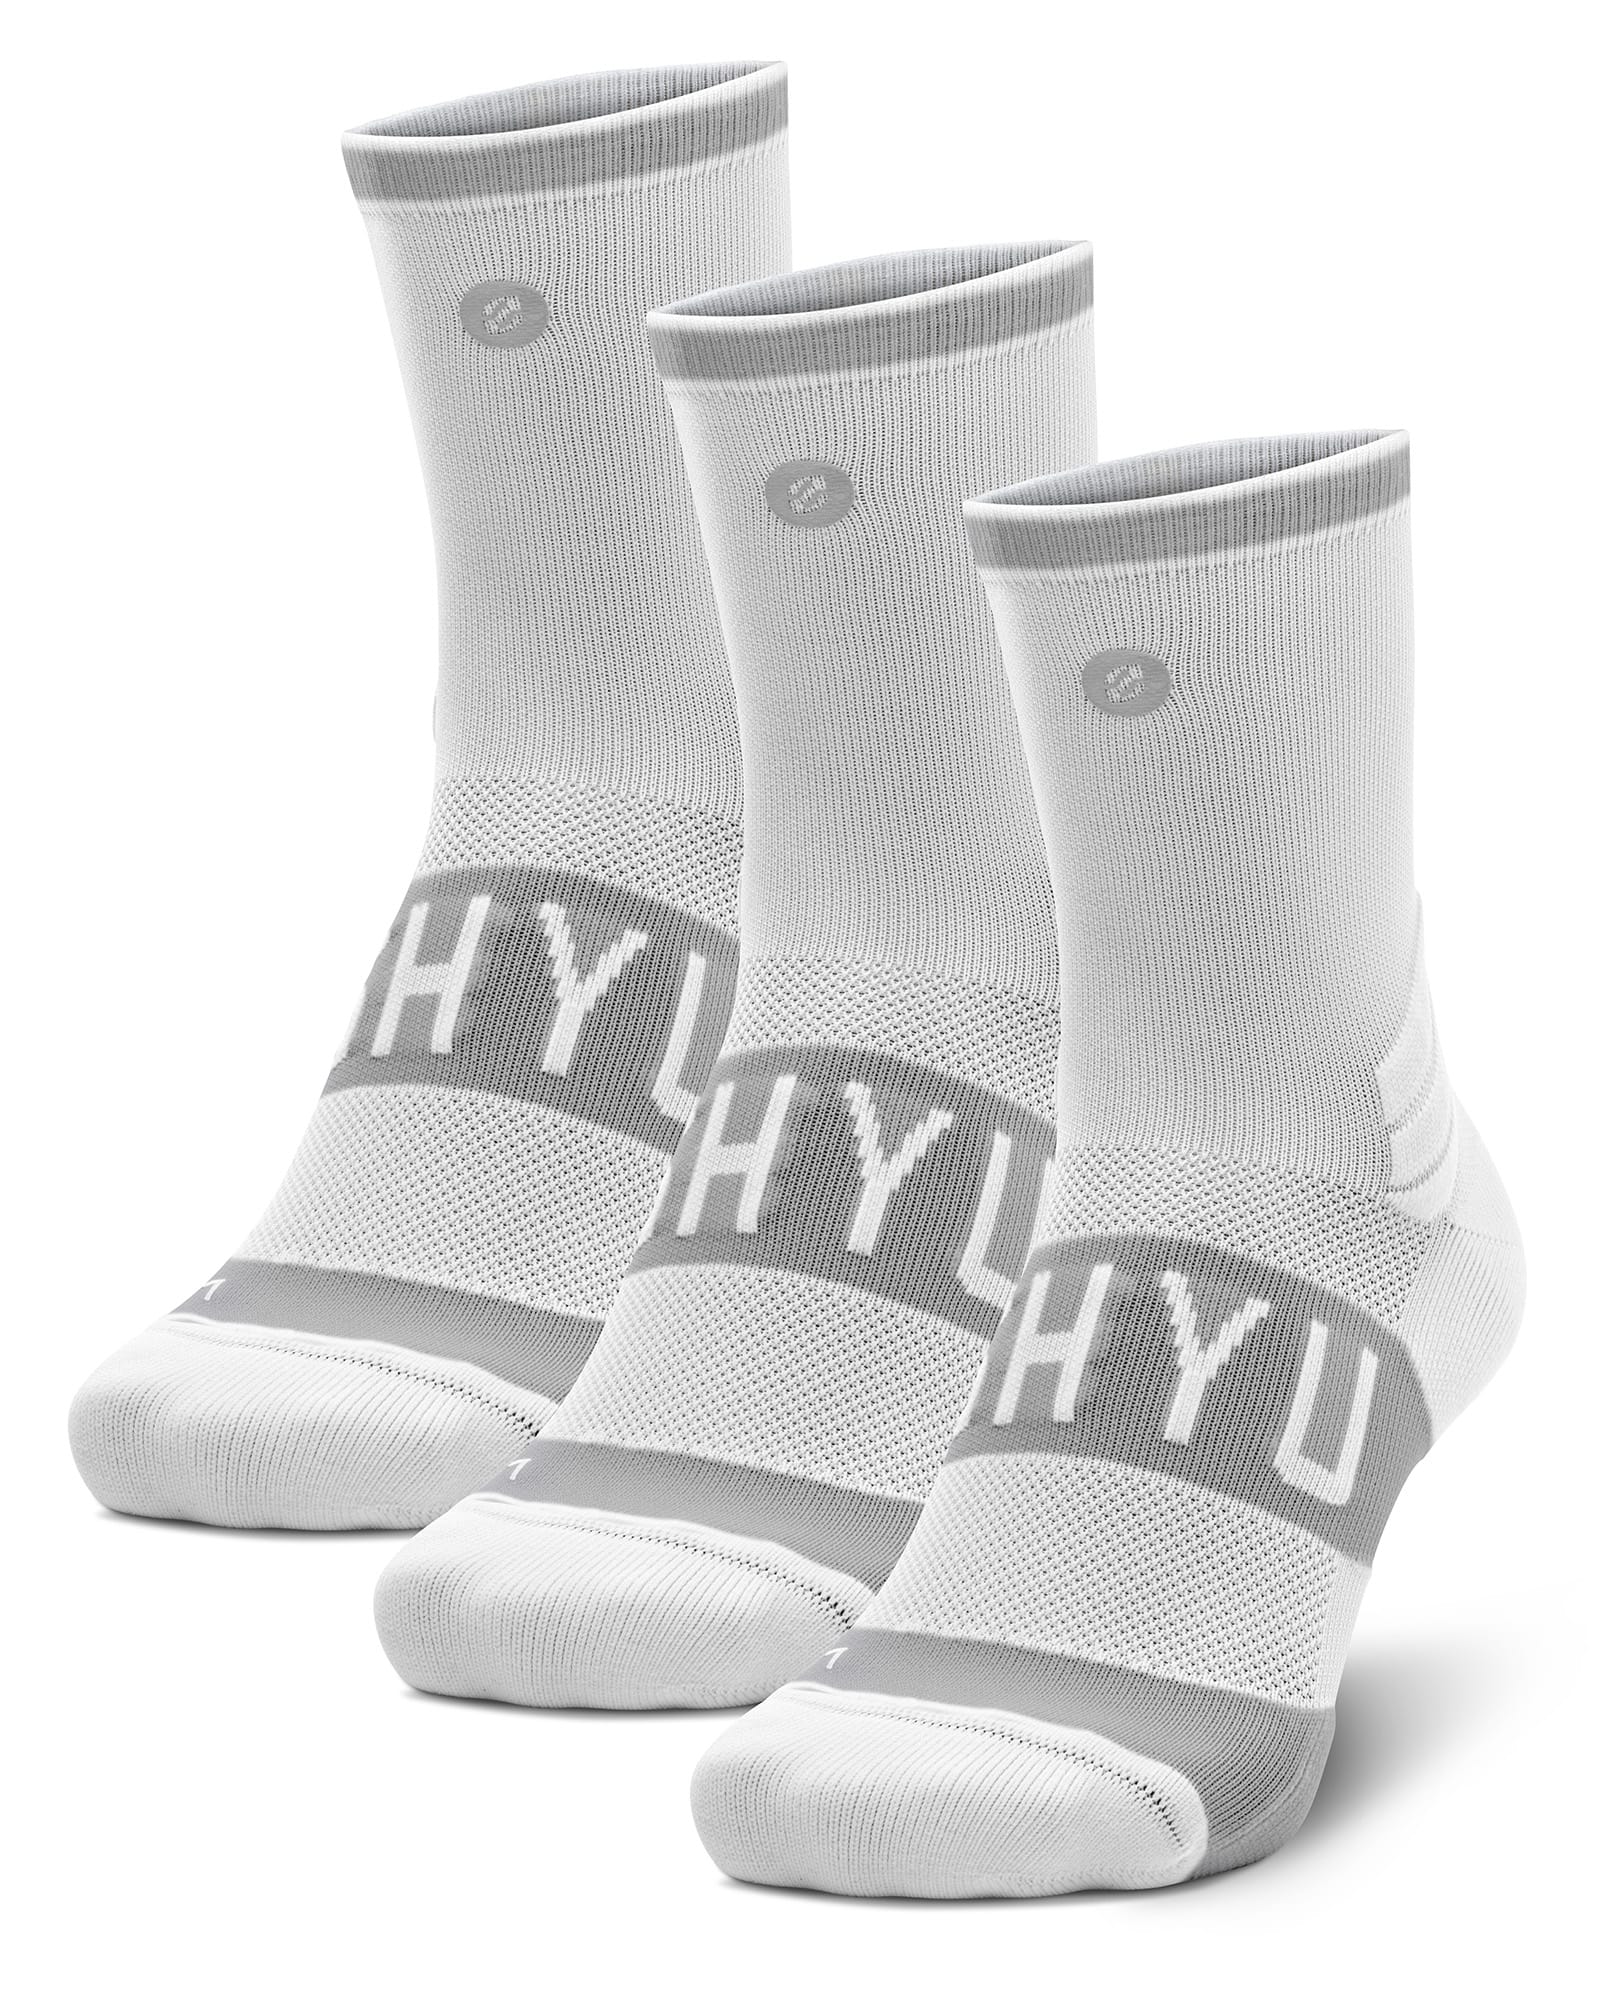 SHYU training socks - 3 pack